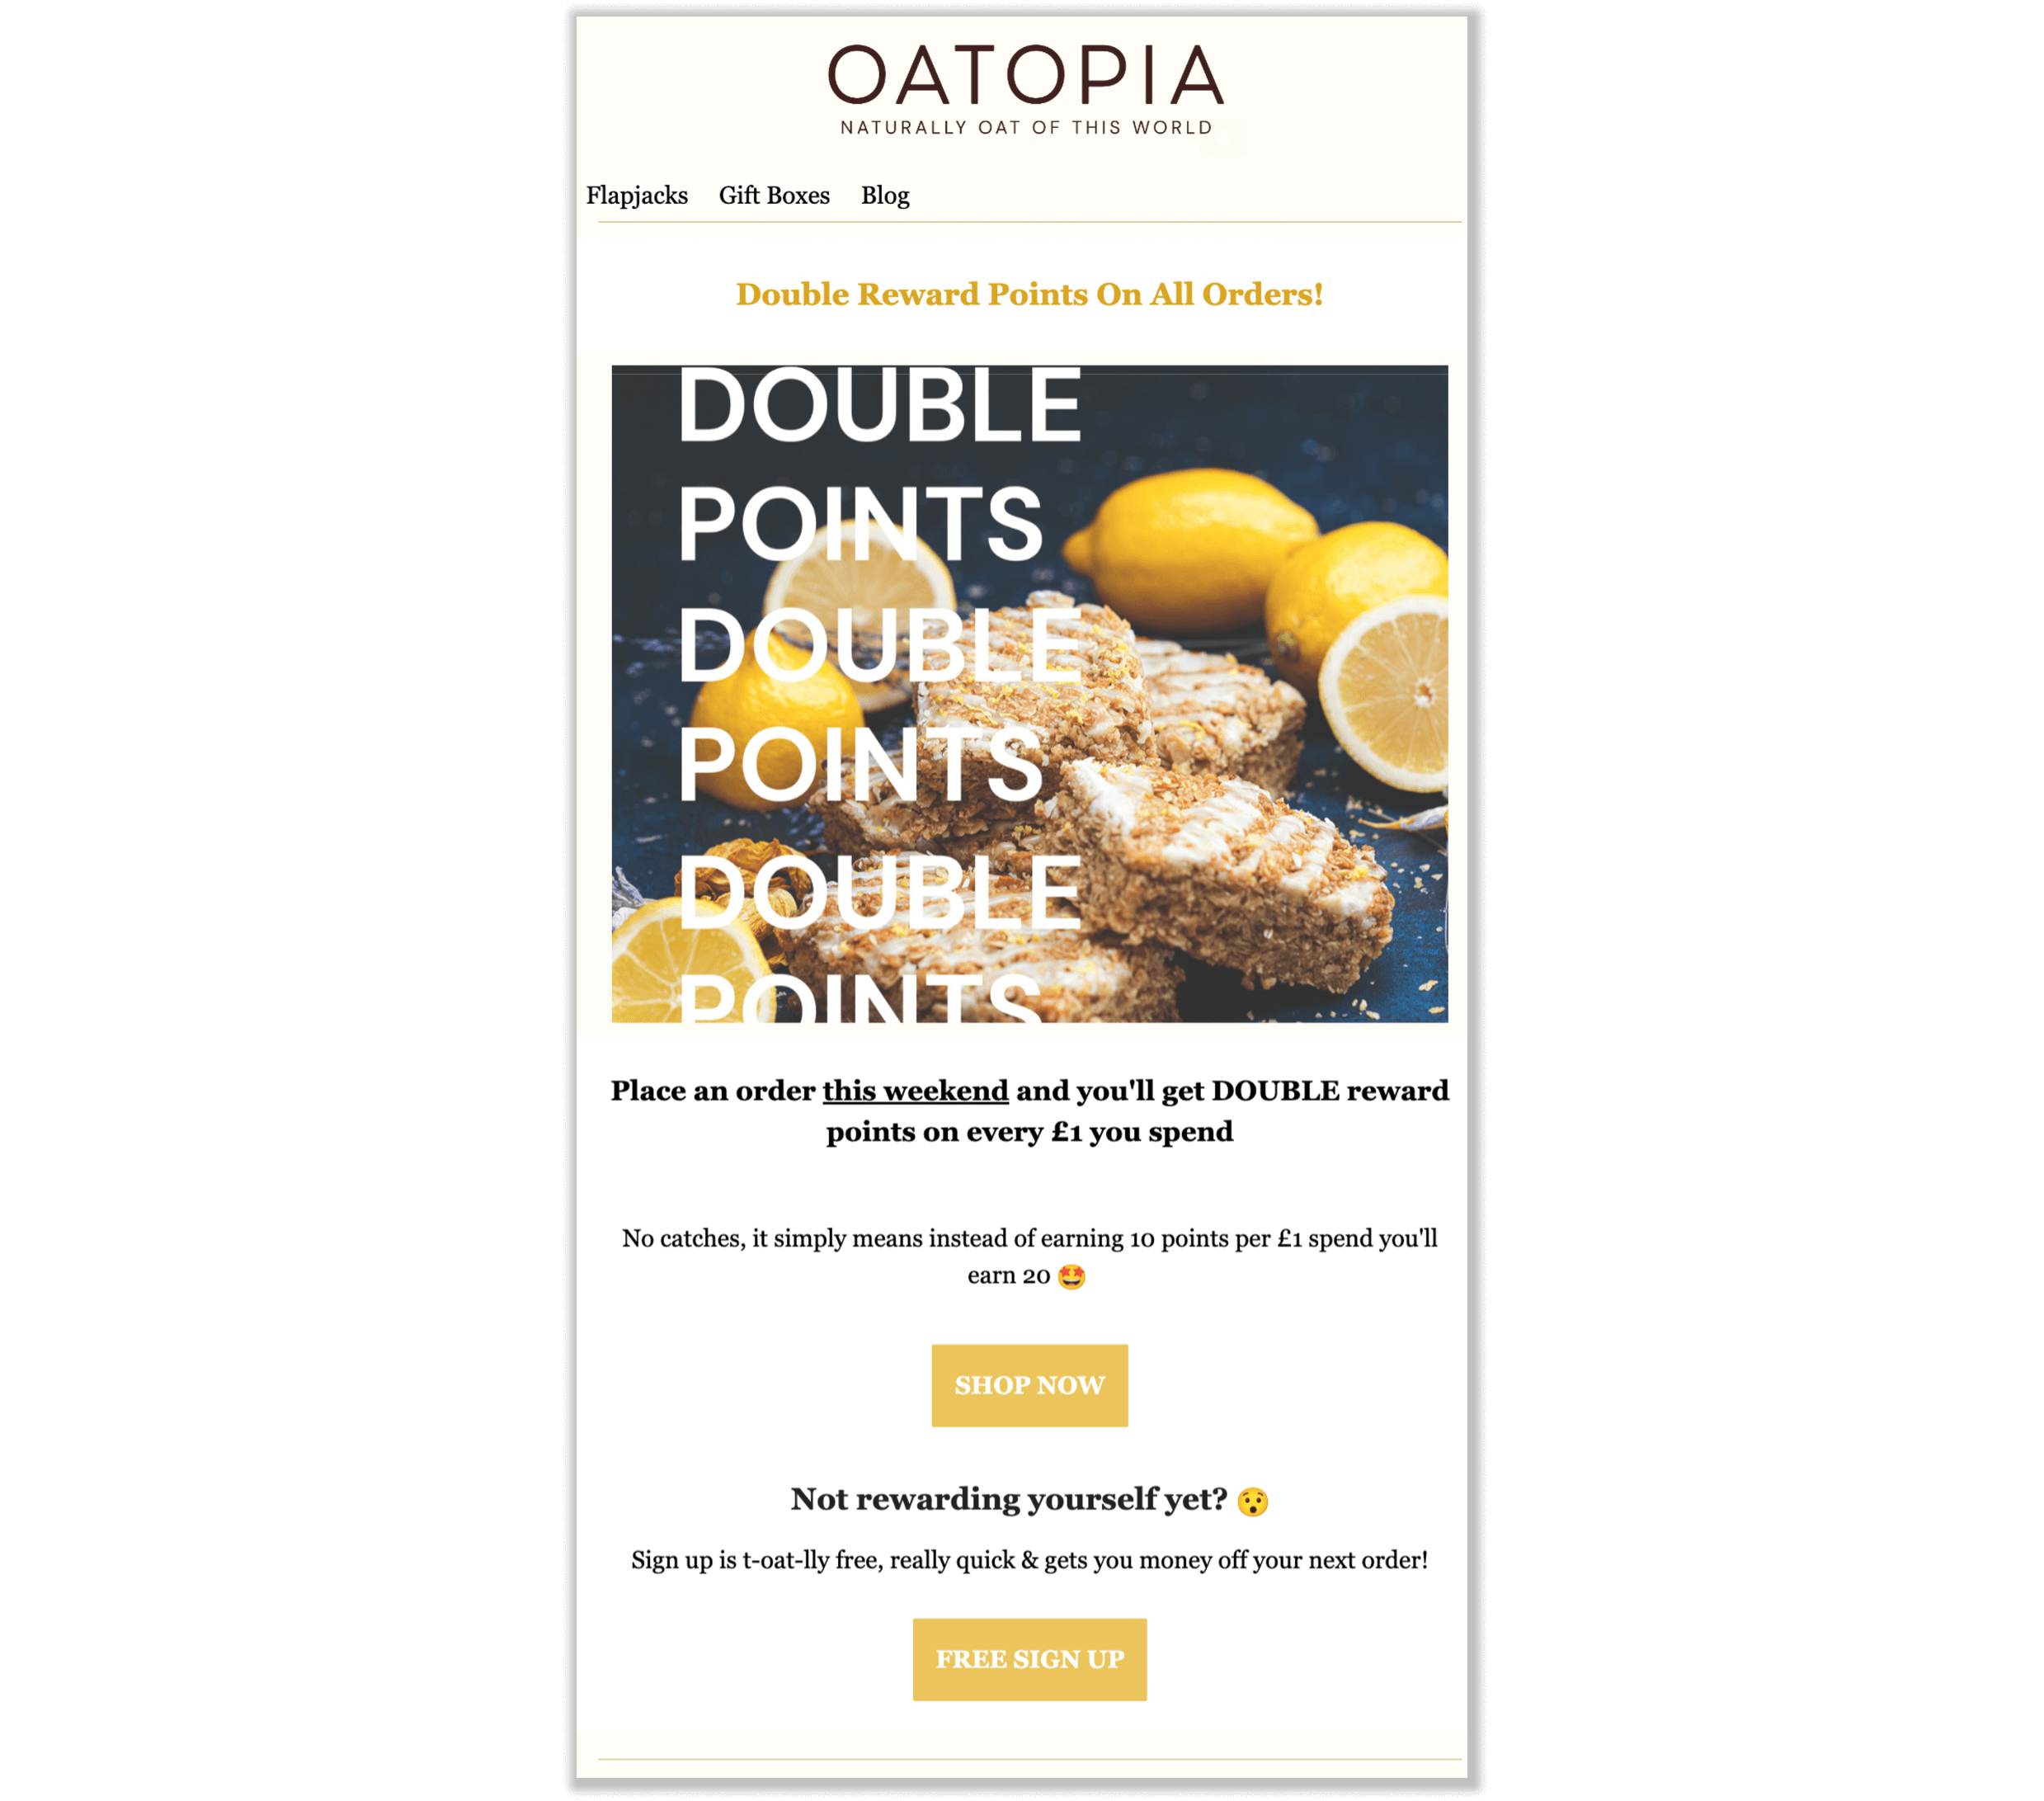 Скриншот электронного письма от Oatopia, объясняющего кампанию по получению бонусных баллов. В фирменном электронном письме объясняется, что клиенты могут заработать двойные бонусные баллы за каждый фунт стерлингов, потраченный в эти выходные.